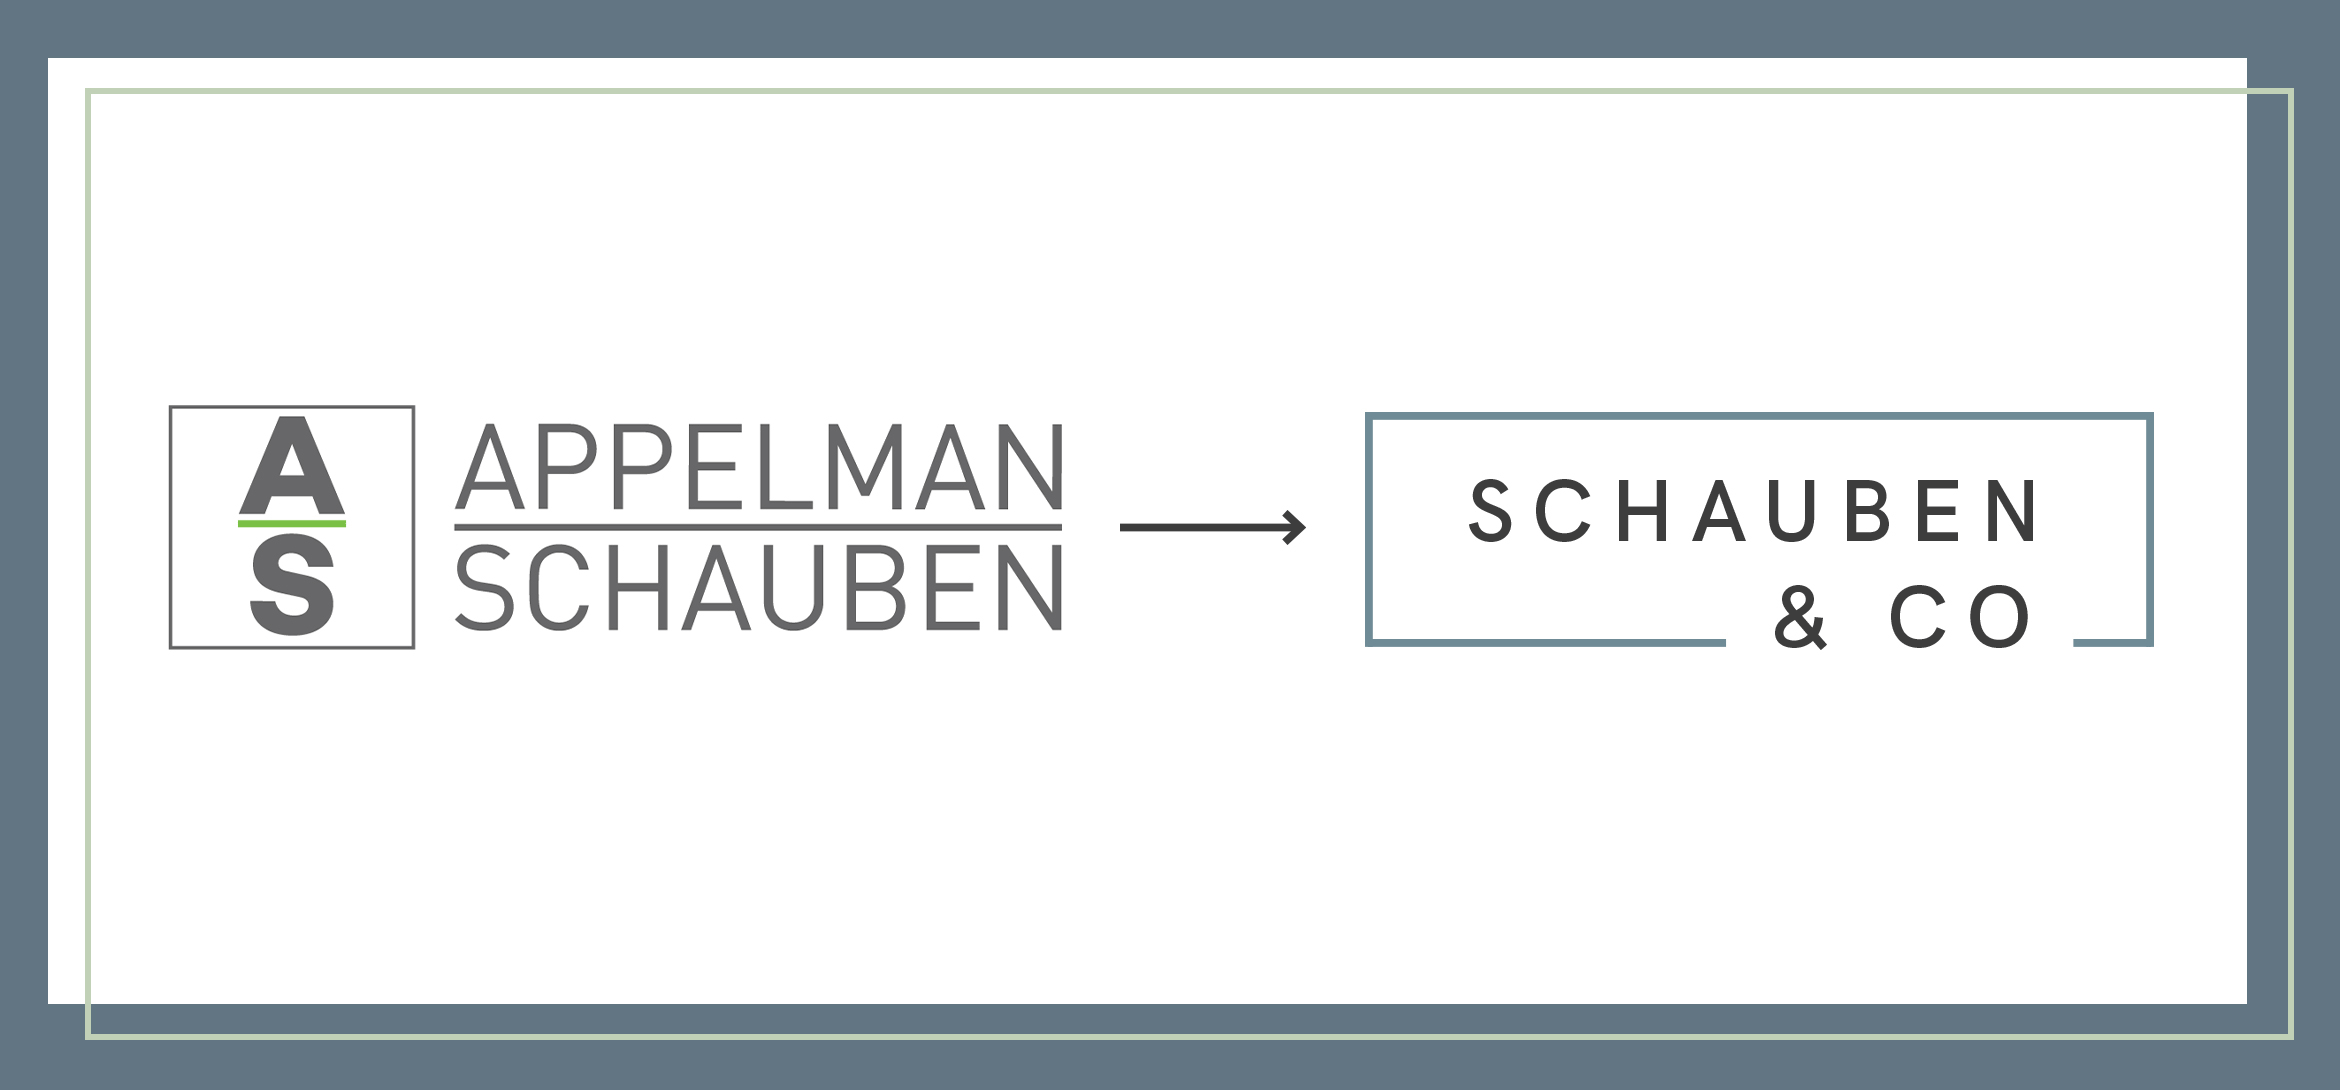 New Schauben & Co.